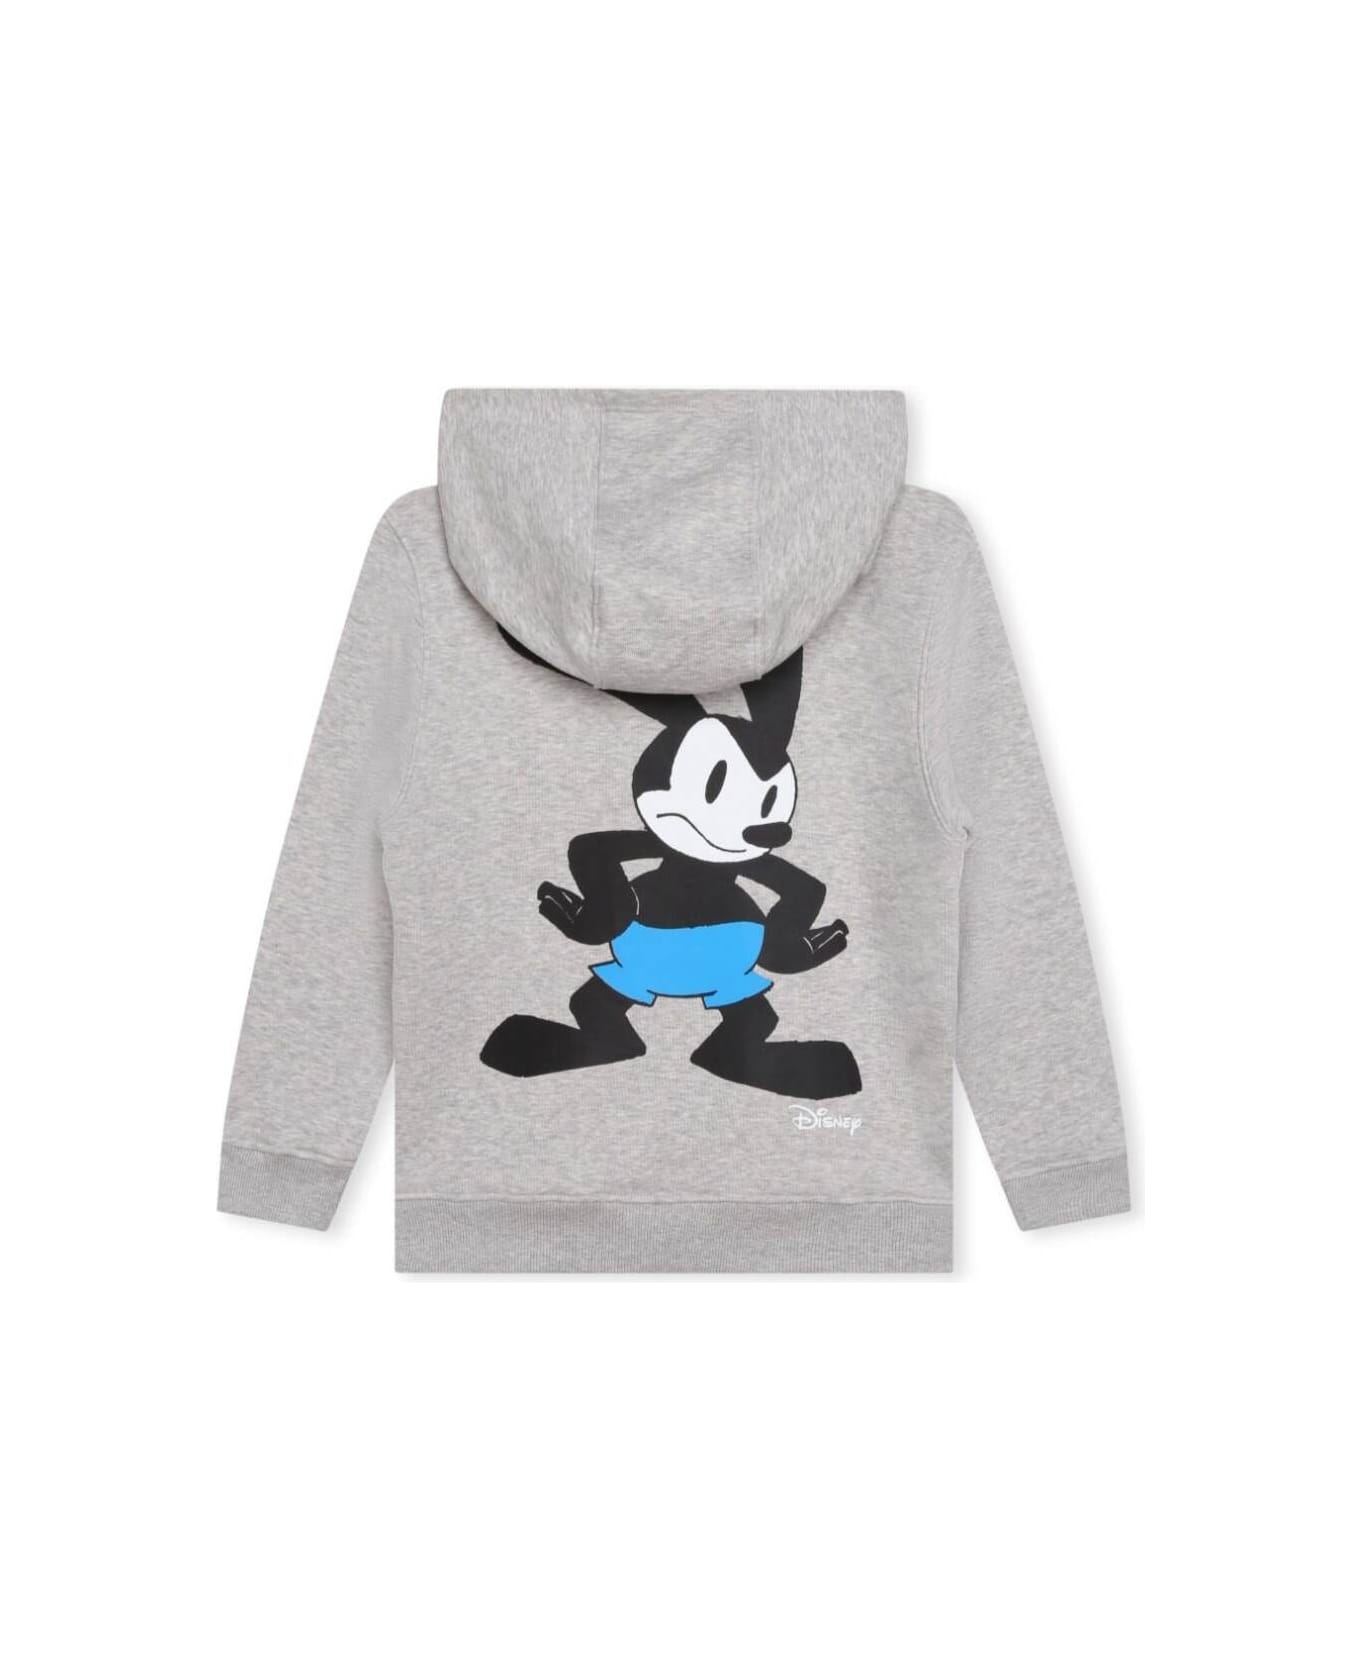 Givenchy Grey Sweatshirt With Disney X Oswald 'cartoon' Print In Cotton Blend Boy - GREY